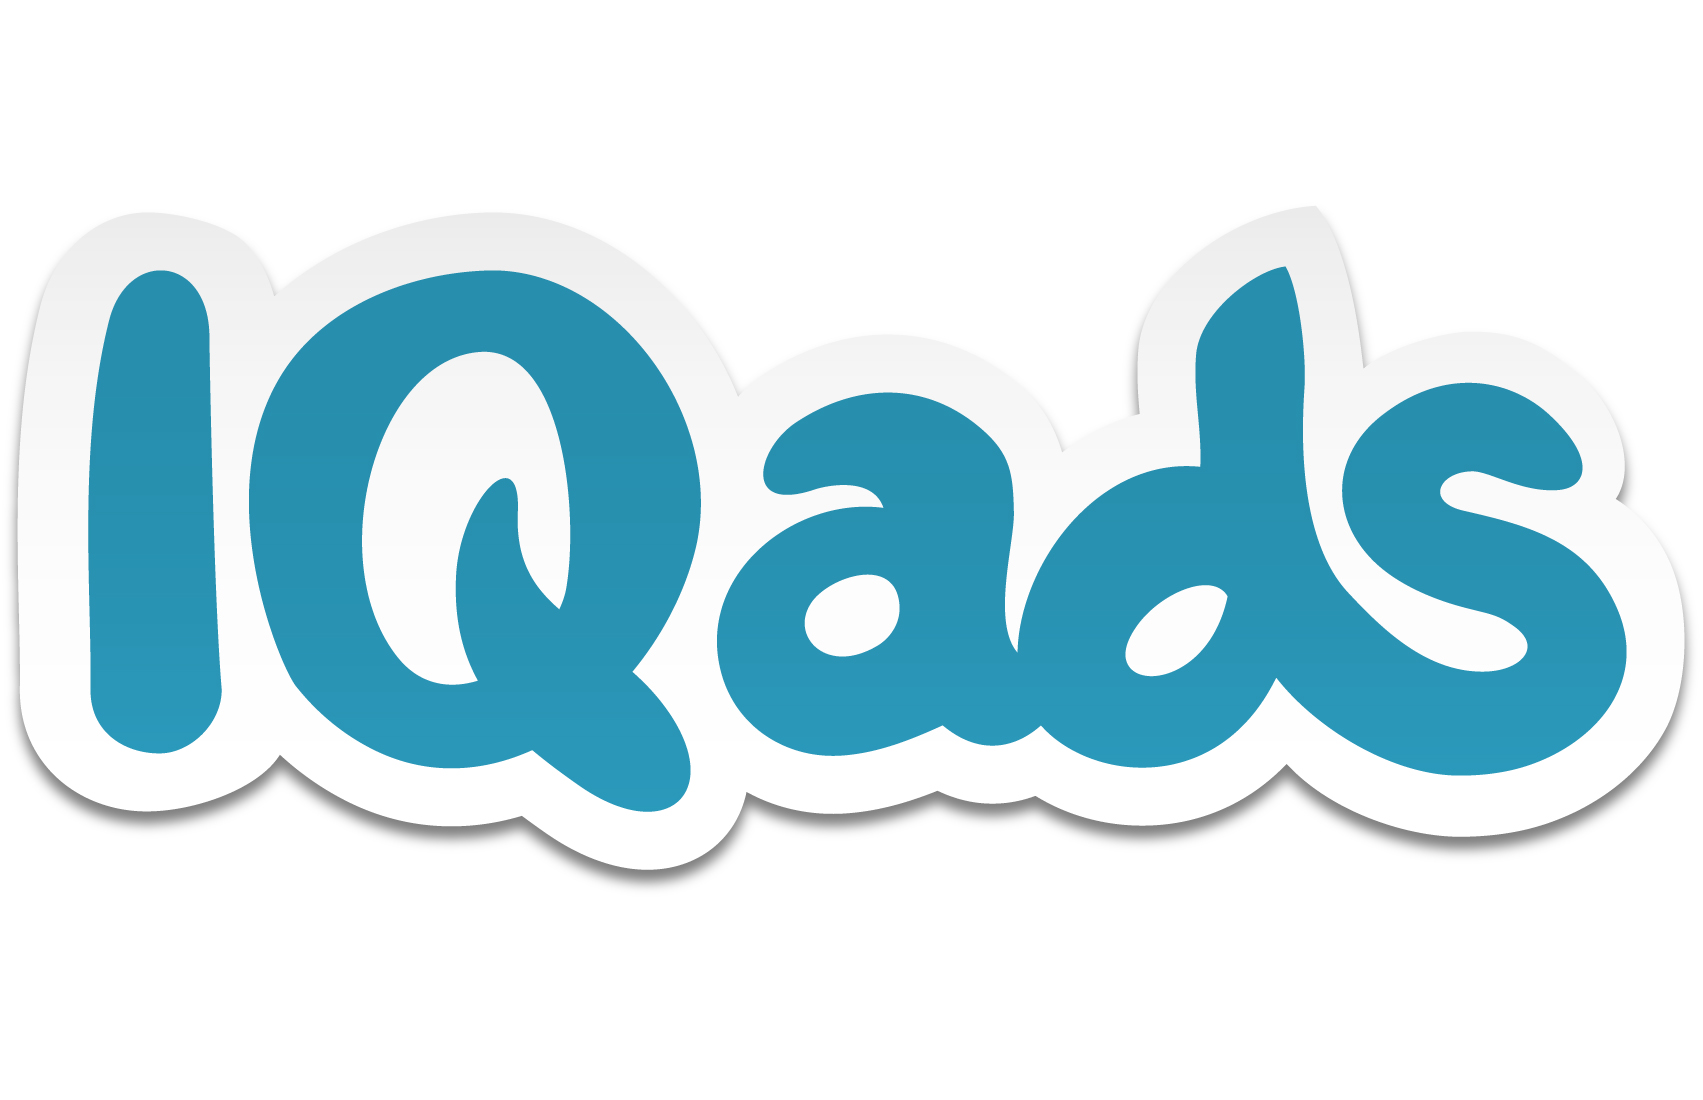 IQads_logo